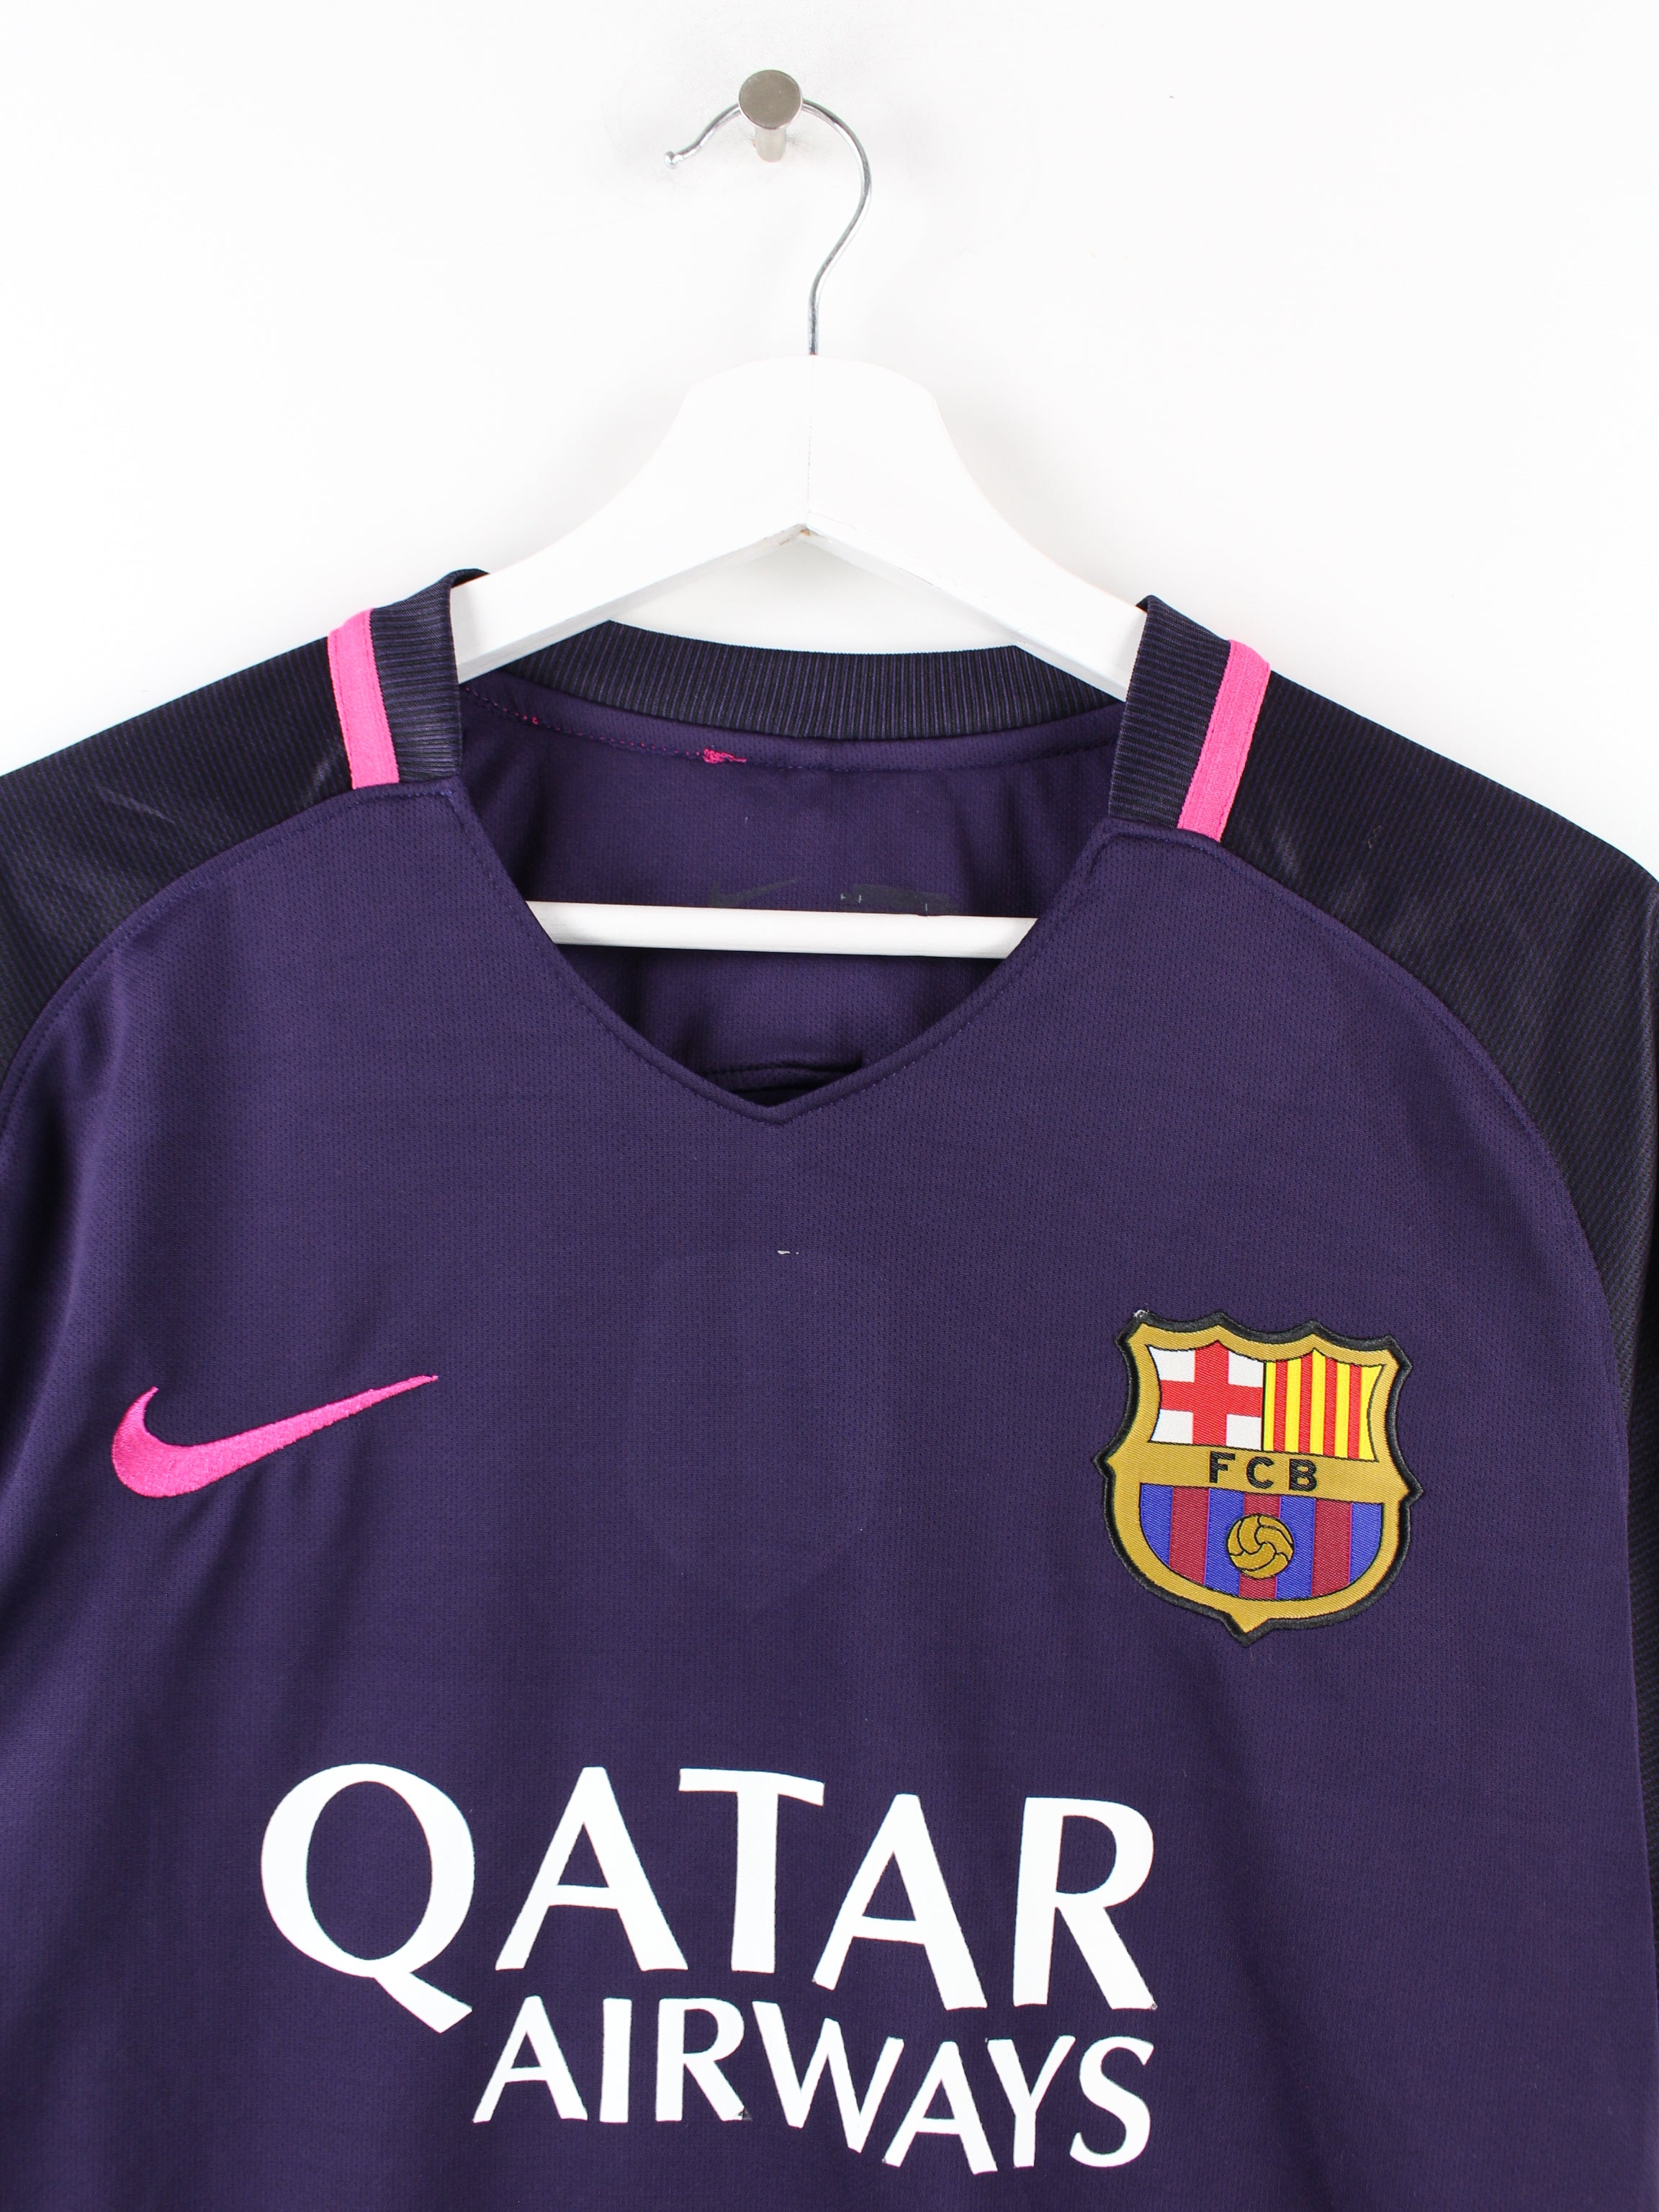 fc barcelona jersey purple